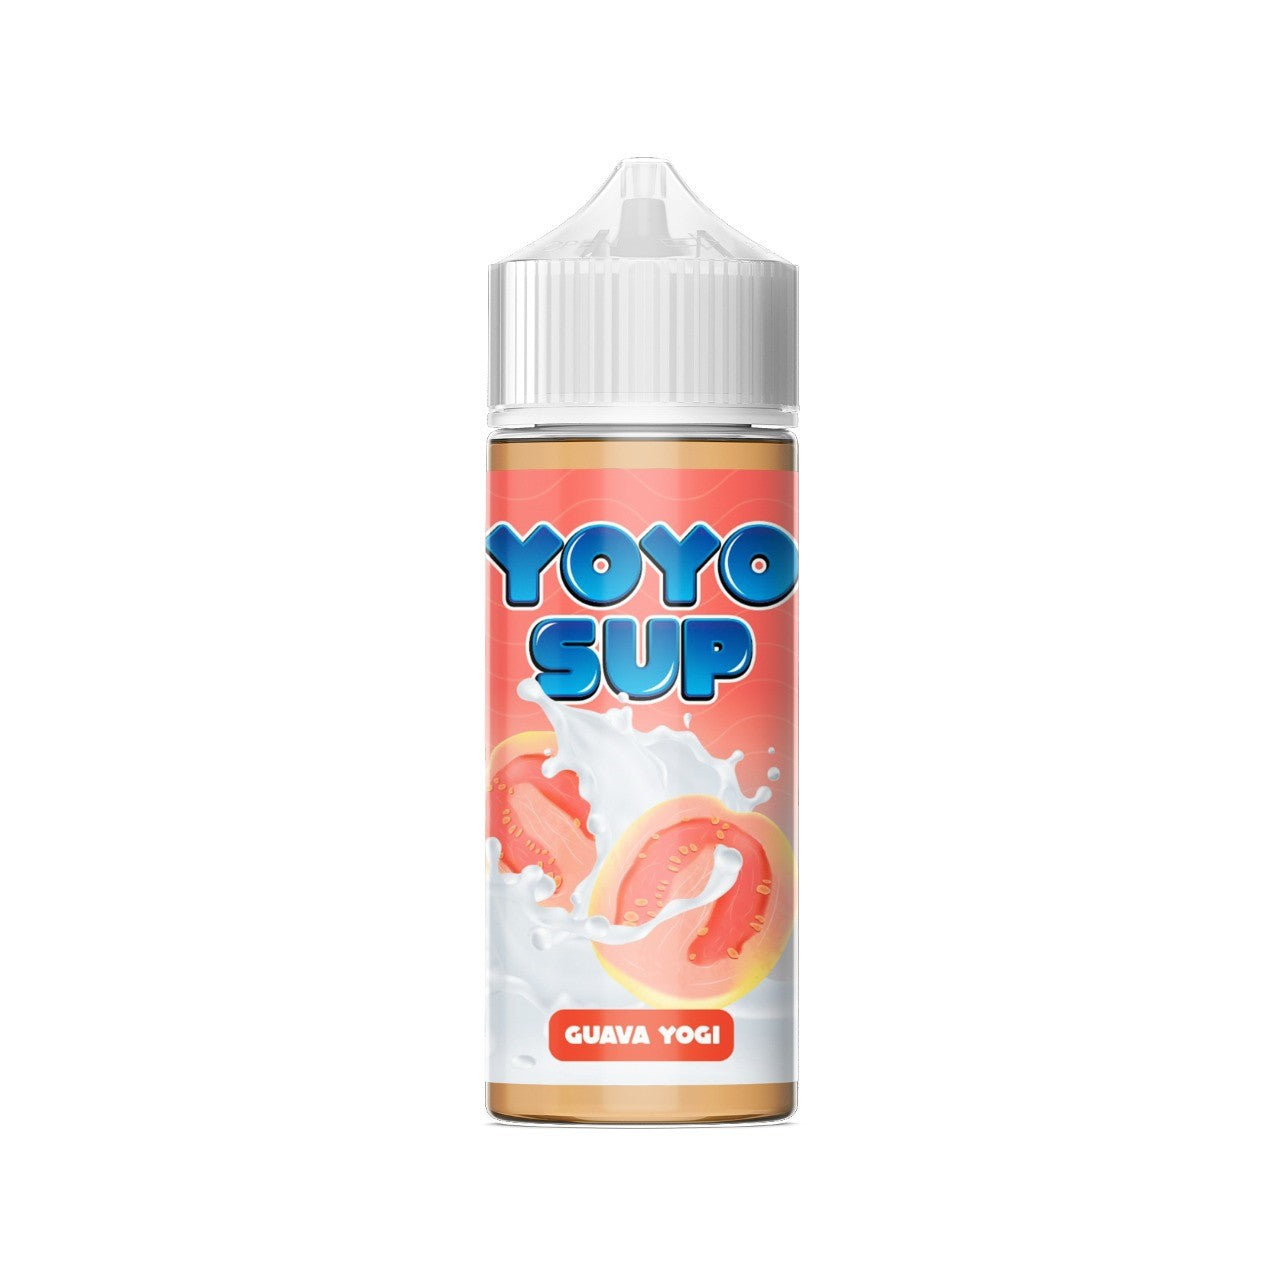 Yoyo Sup | Guava by Null E-Liquid 120ml